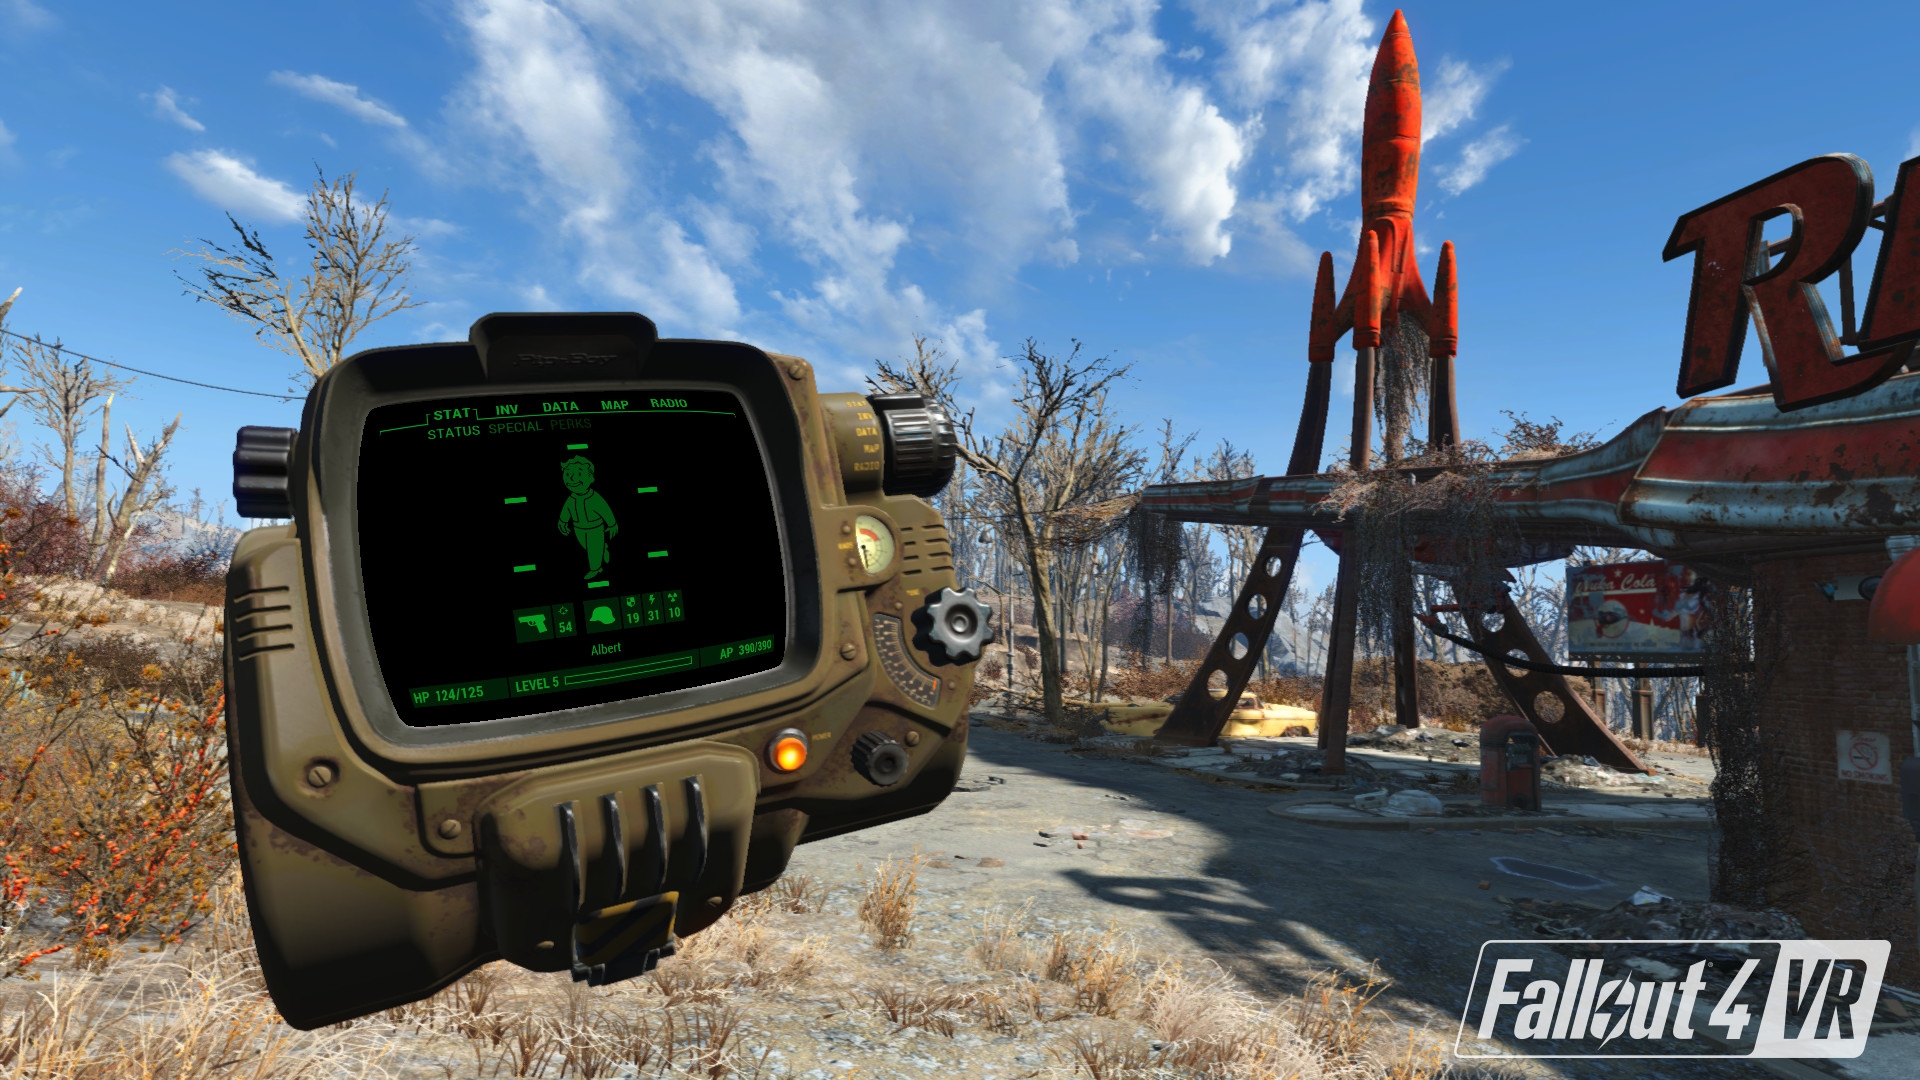 Скриншот из игры Fallout 4 VR под номером 3